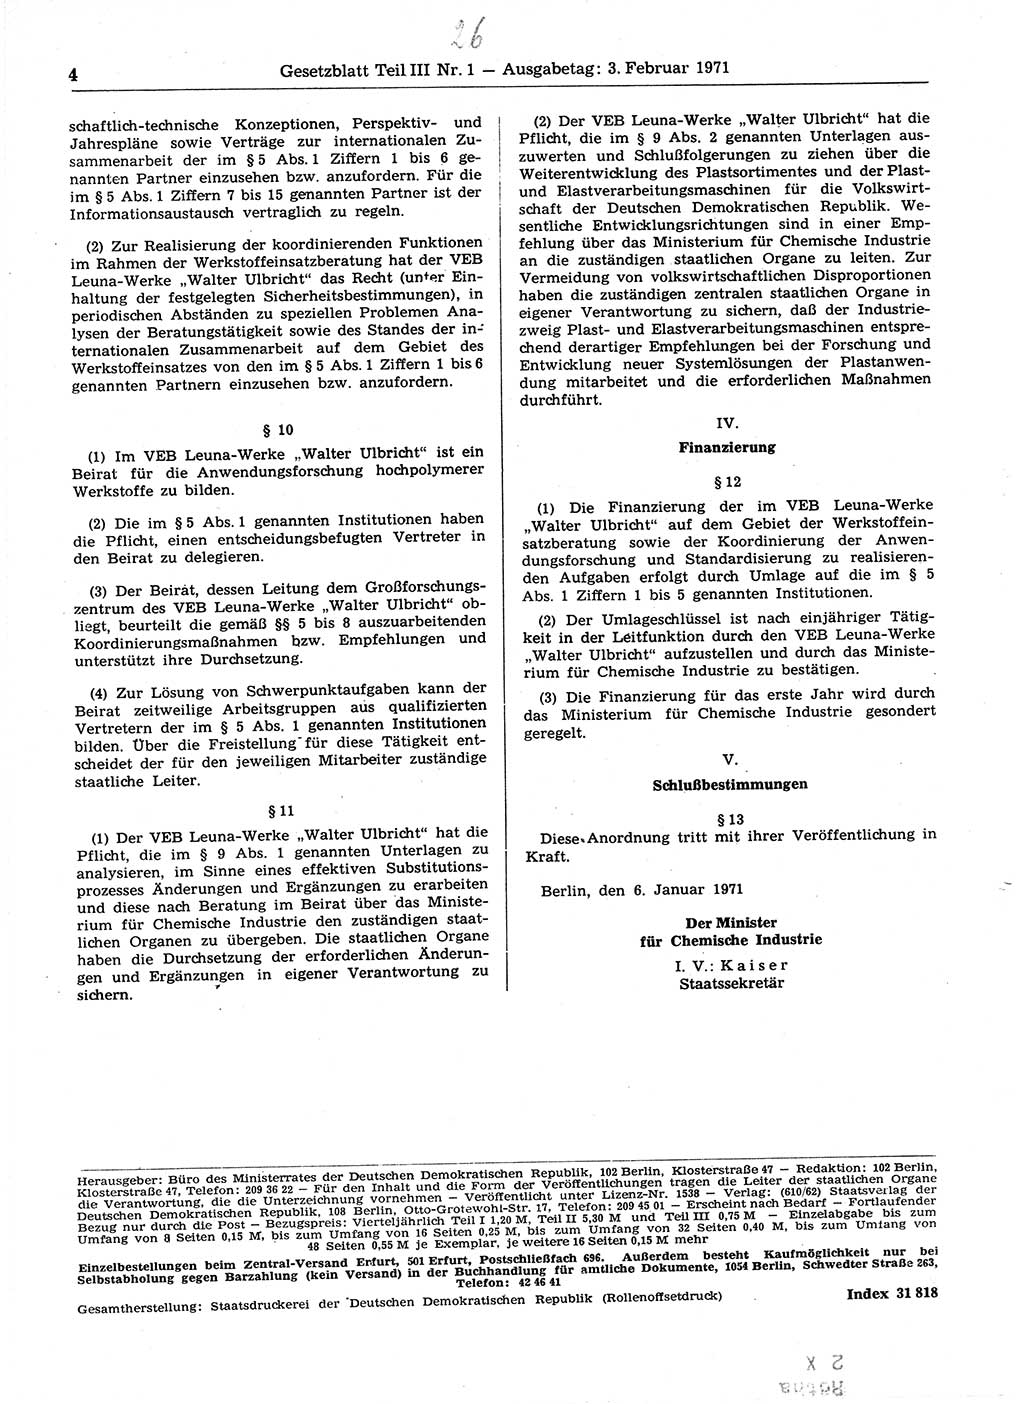 Gesetzblatt (GBl.) der Deutschen Demokratischen Republik (DDR) Teil ⅠⅠⅠ 1971, Seite 4 (GBl. DDR ⅠⅠⅠ 1971, S. 4)